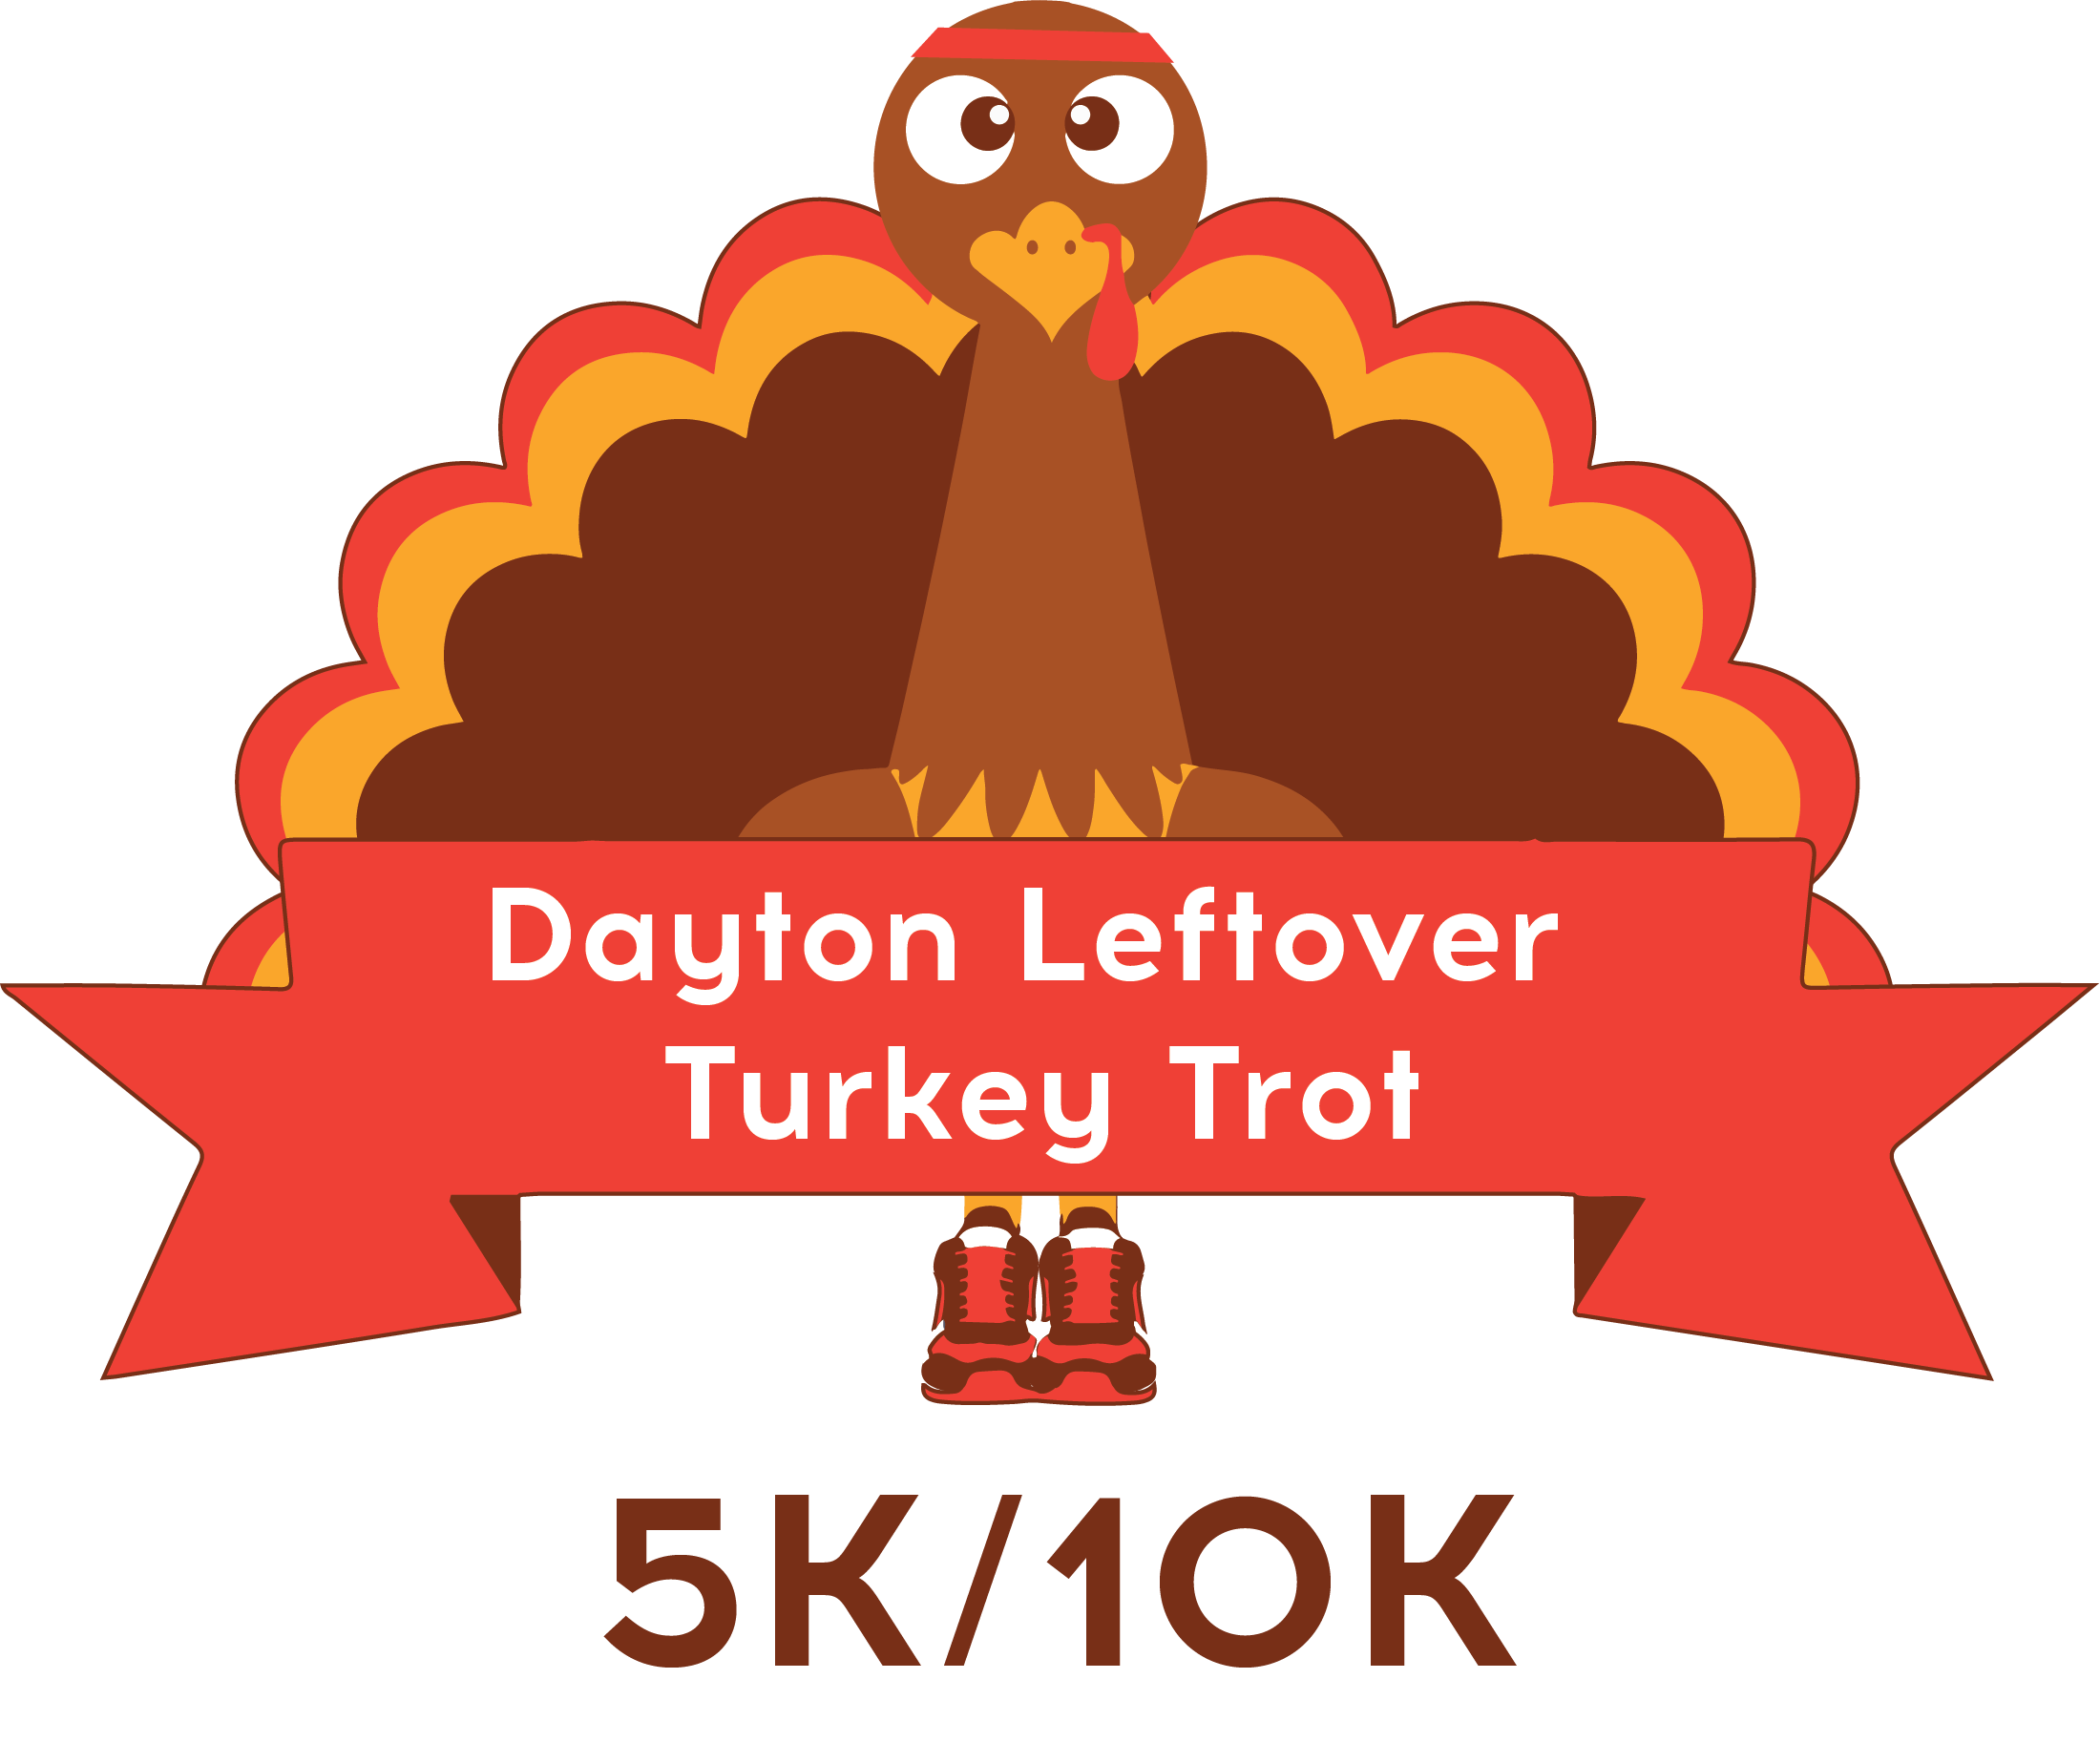 Dayton Leftover Turkey Trot